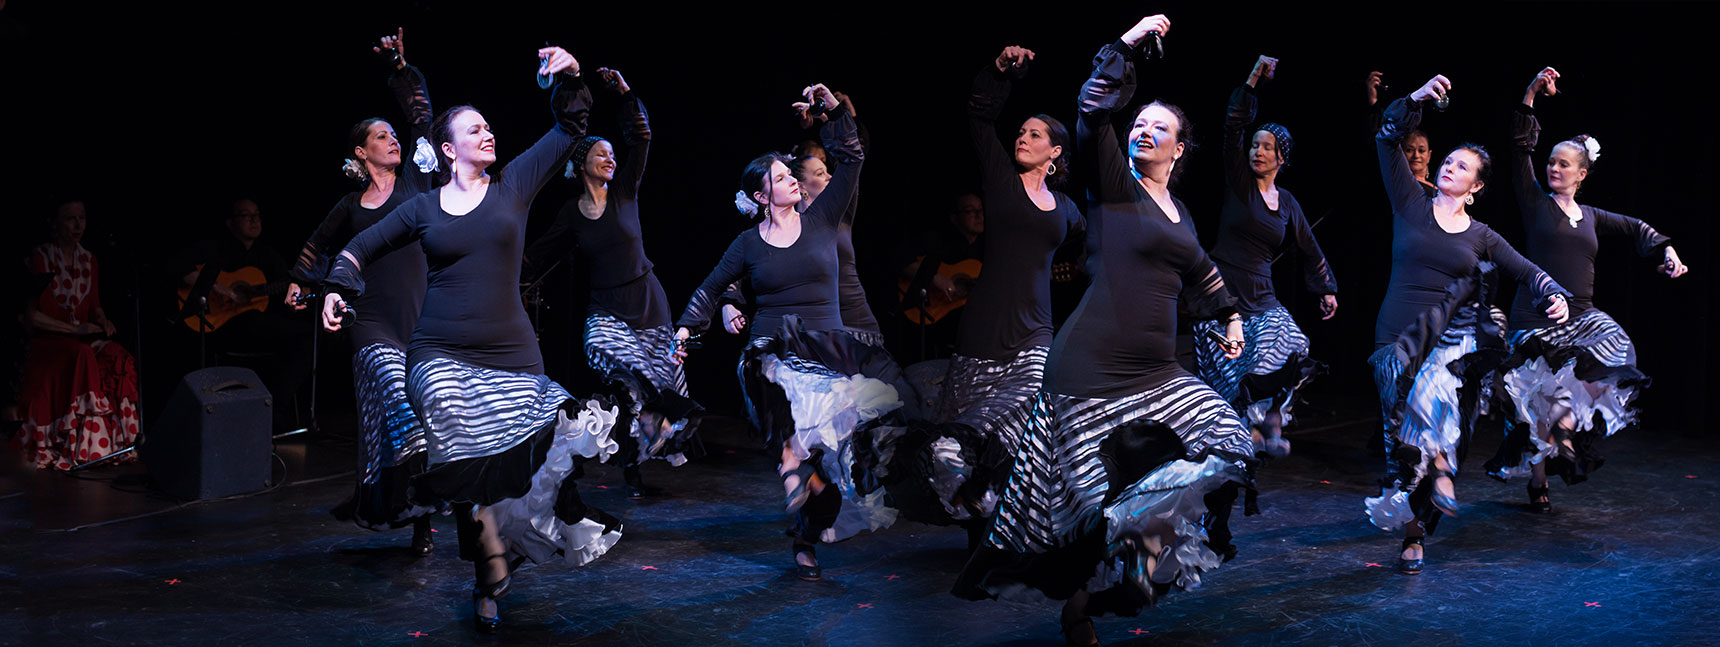 Mozaico Flamenco Castanets Workshops Vancouver